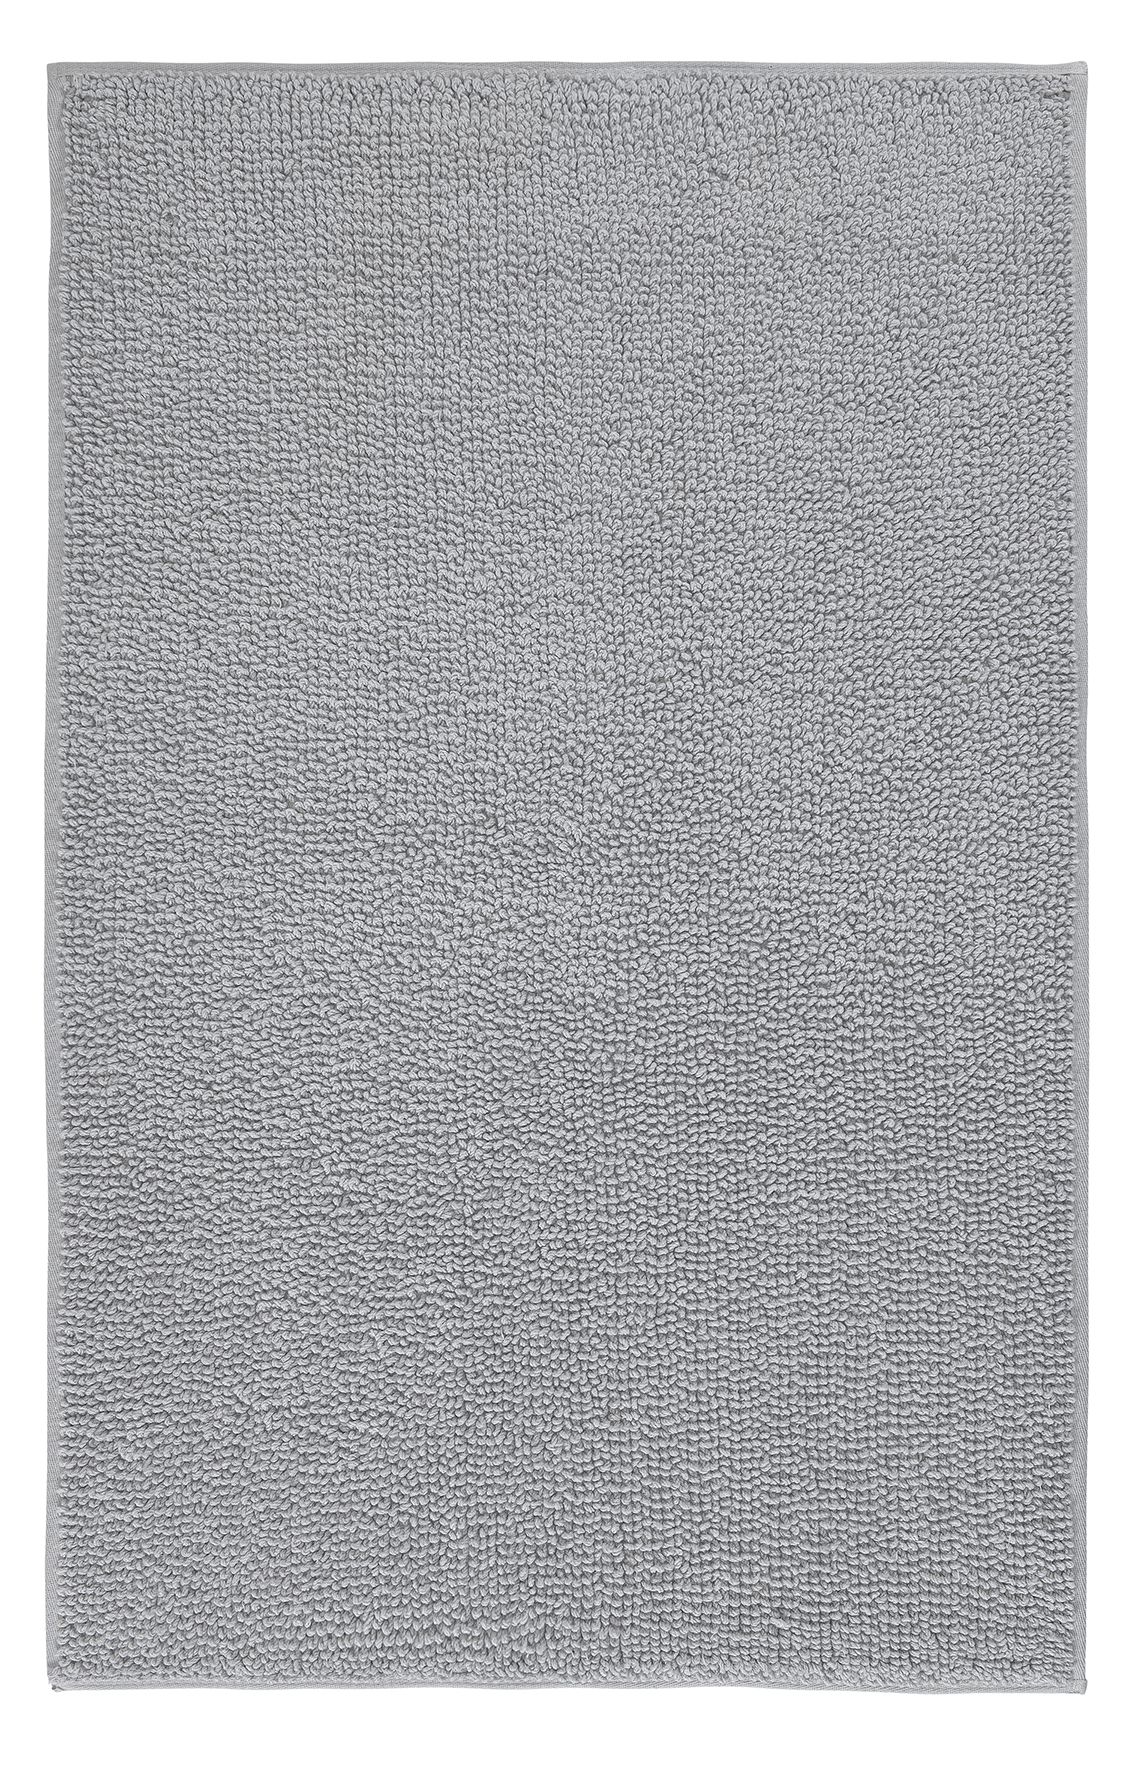 Badteppich, Chrissy Silbergrau, 60x100  cm